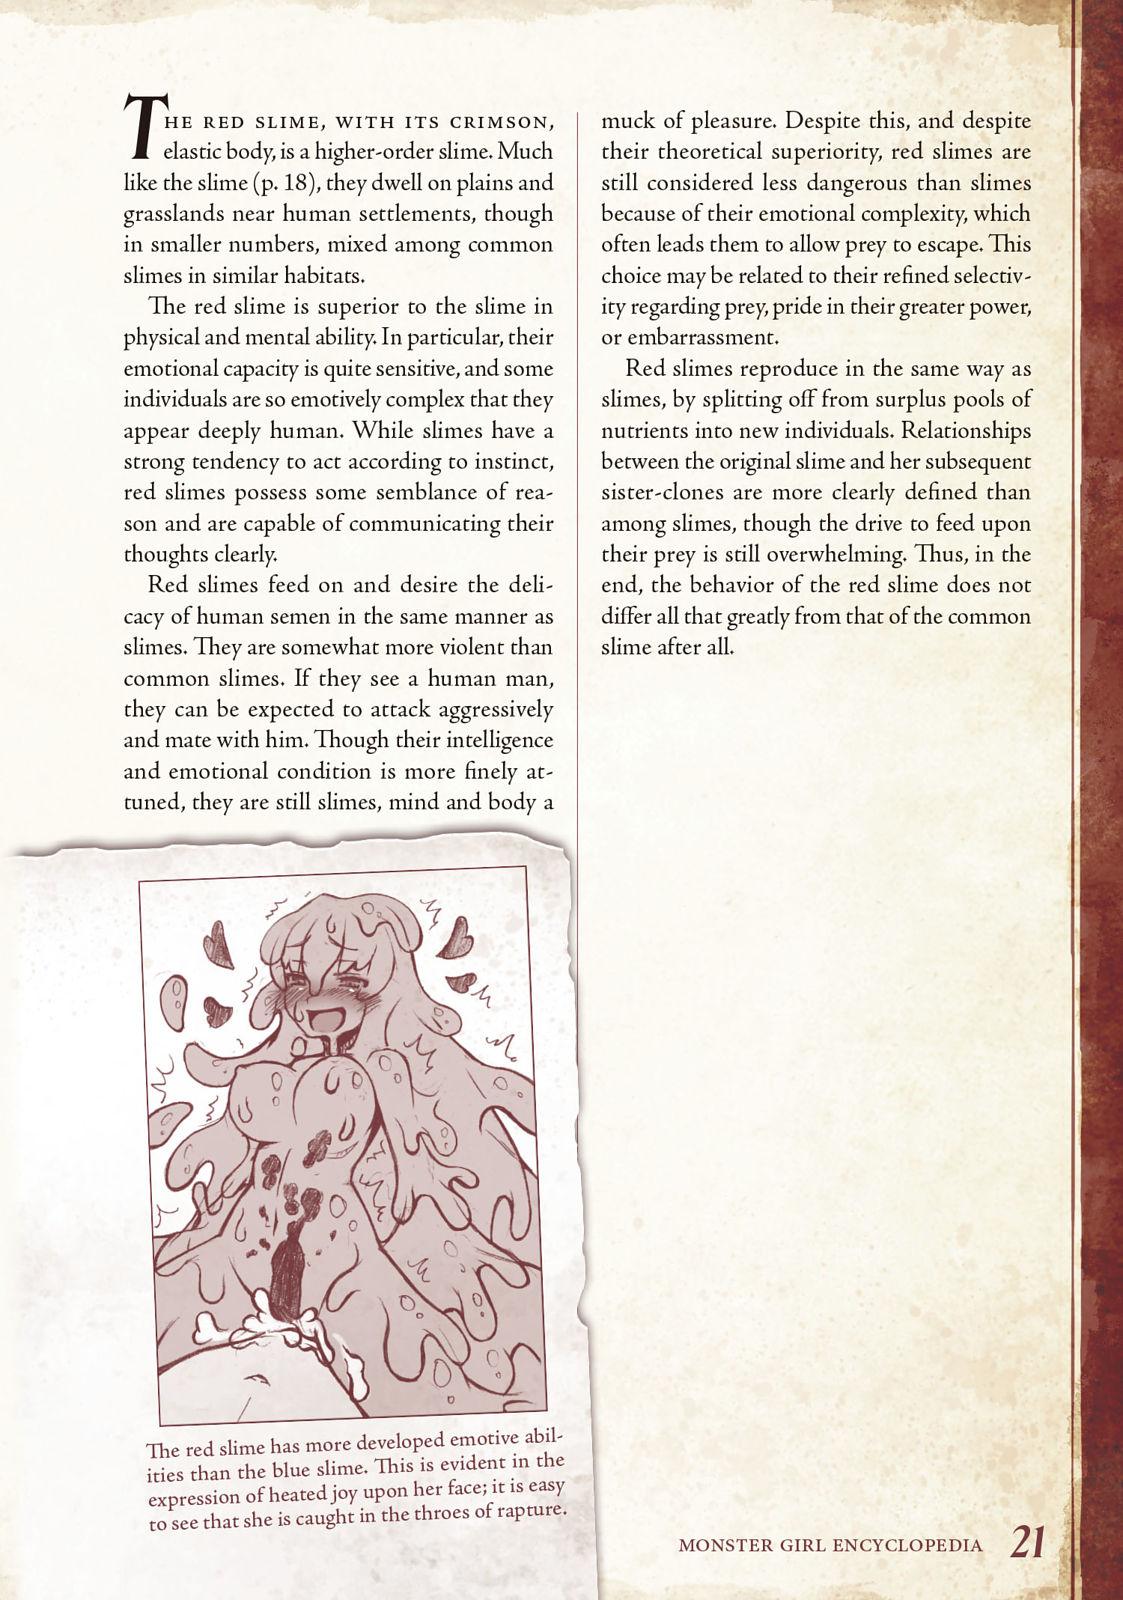 Monster Girl Encyclopedia Vol. 1 21